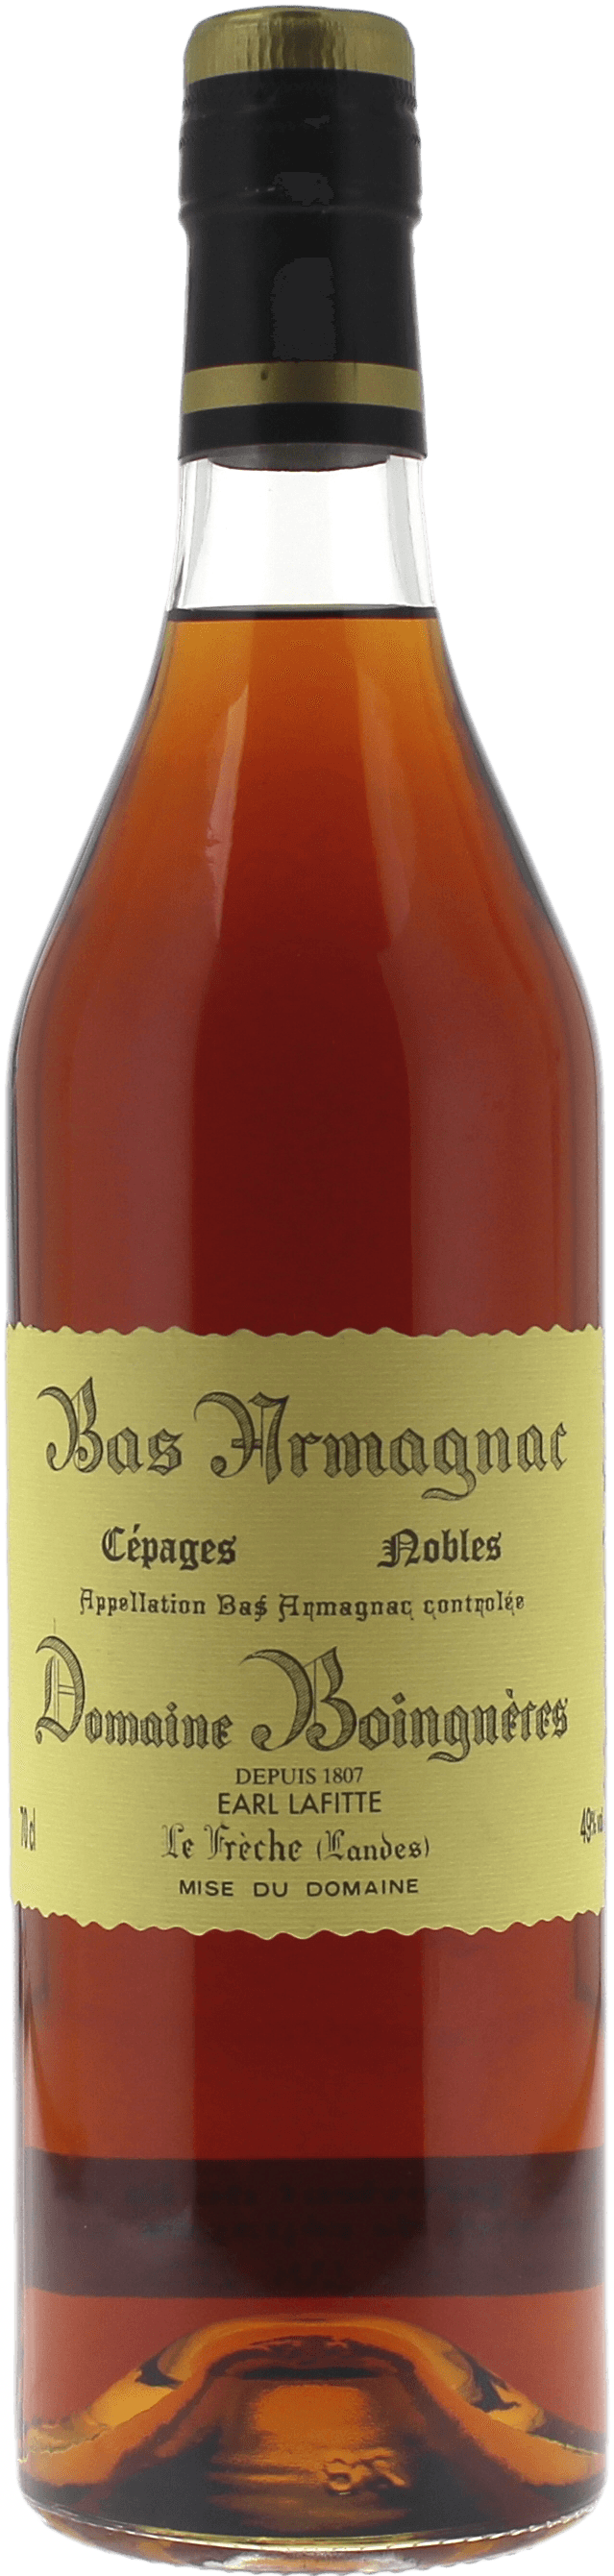 Boigneres cepages nobles 49 1985  Bas Armagnac, Bas Armagnac